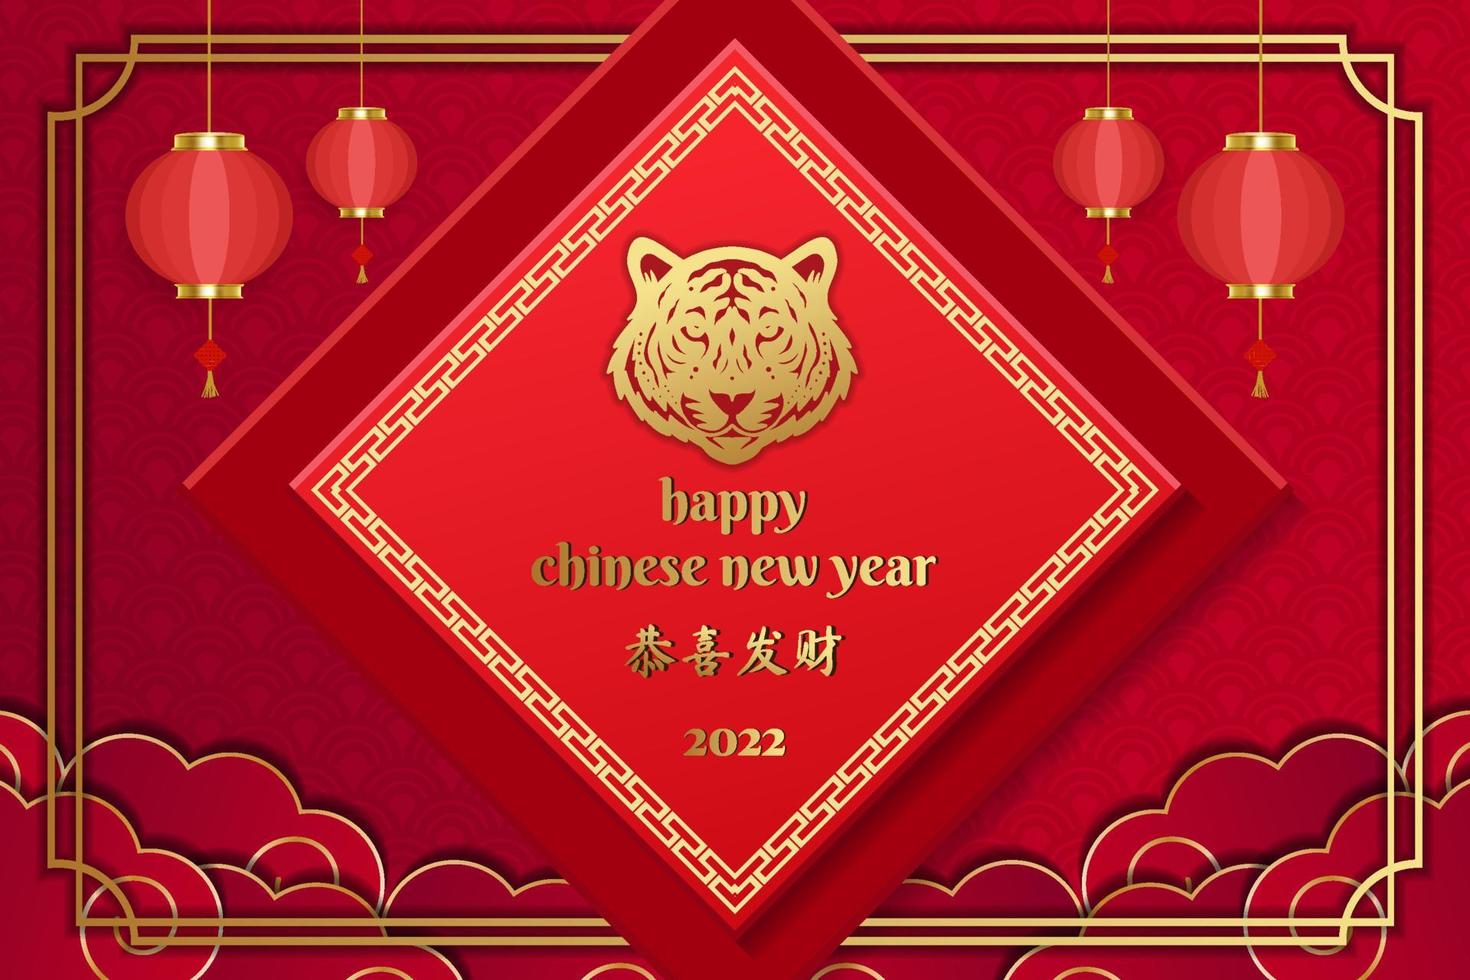 joyeux nouvel an chinois sur fond rouge avec tiger shio ou zodiaque chinois 2022. illustration vectorielle de conception de nouvel an chinois vecteur